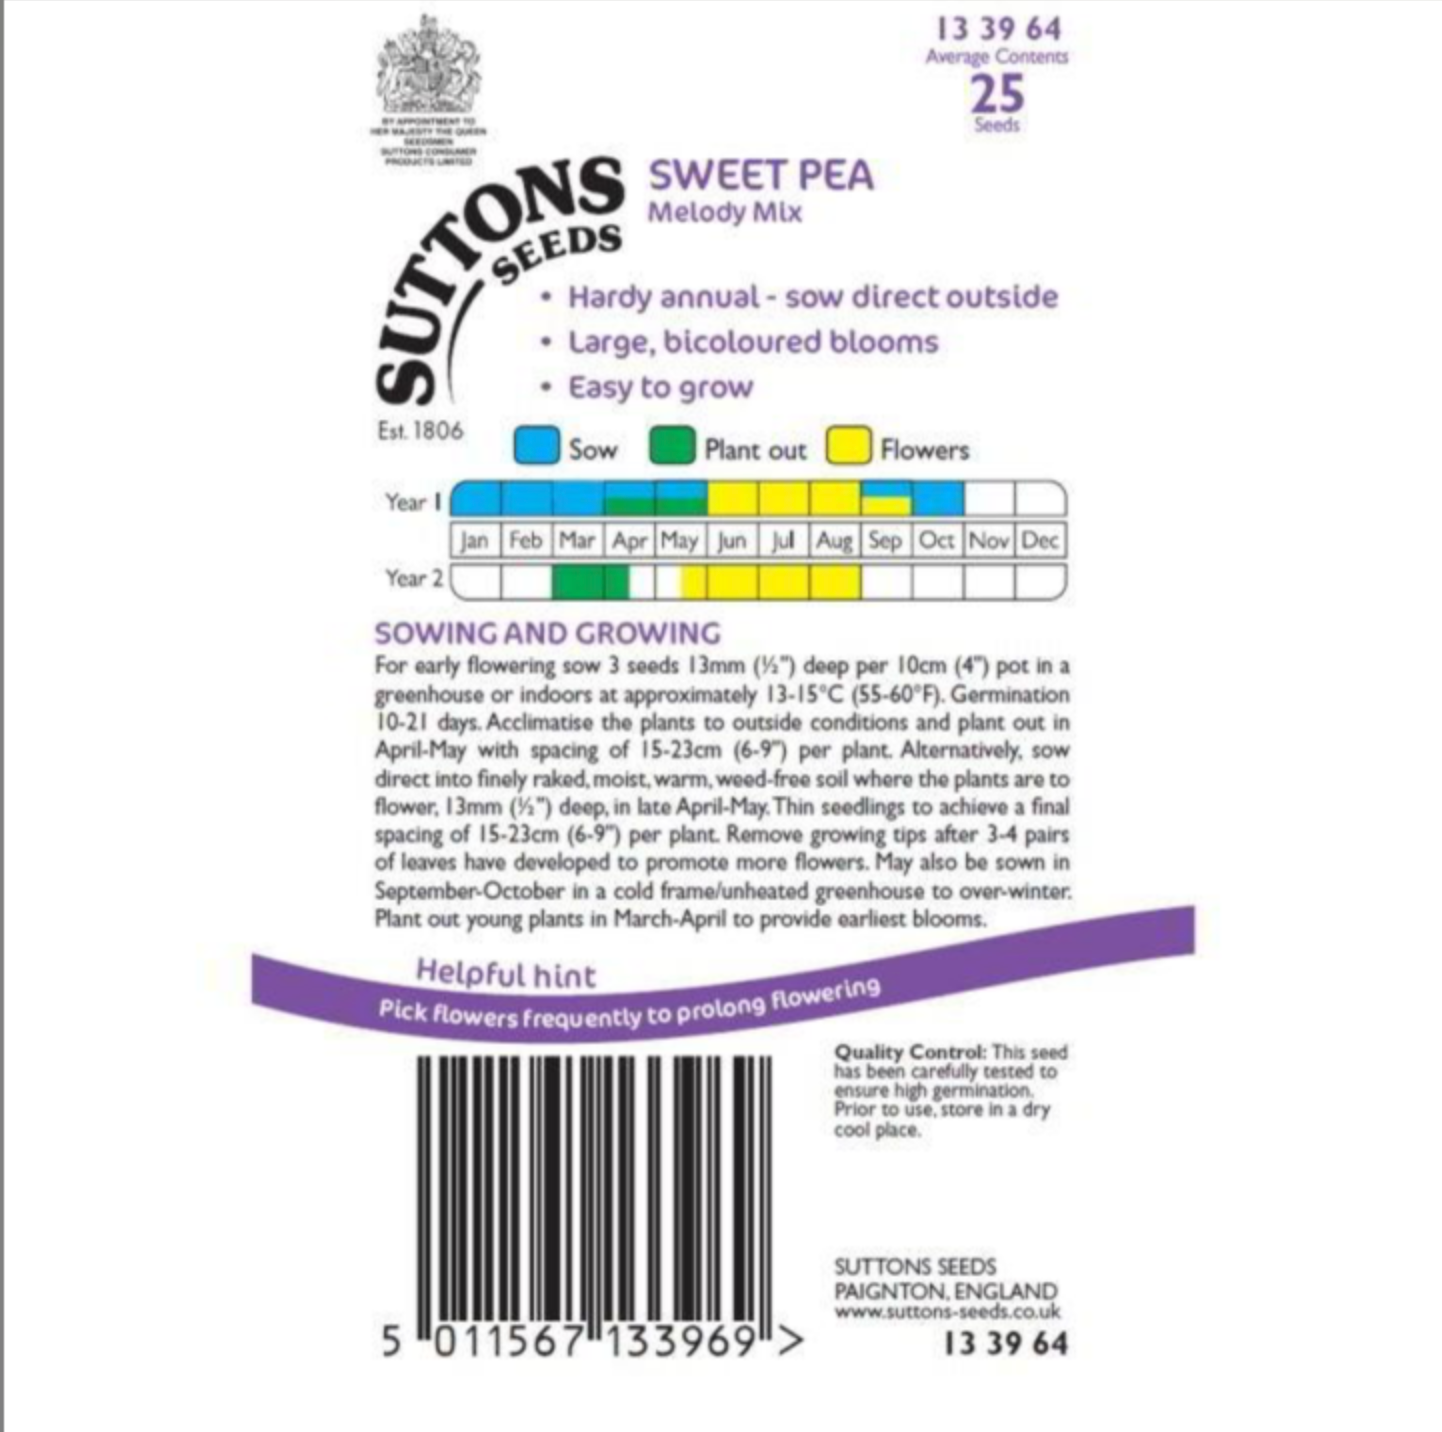 Suttons Sweet Pea Seeds - 3 Varieties